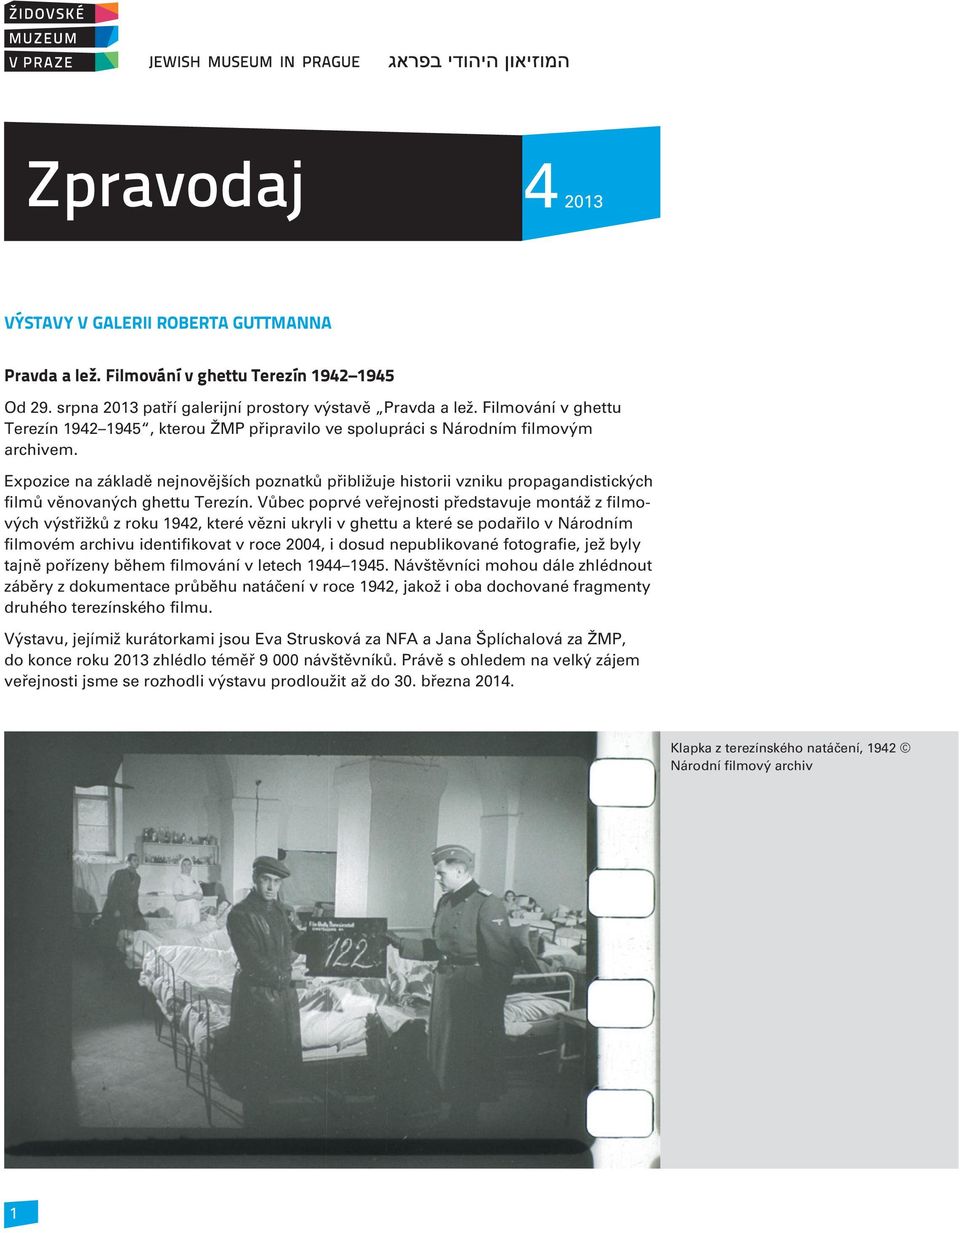 Expozice na základì nejnovìjších poznatkù pøibližuje historii vzniku propagandistických filmù vìnovaných ghettu Terezín.